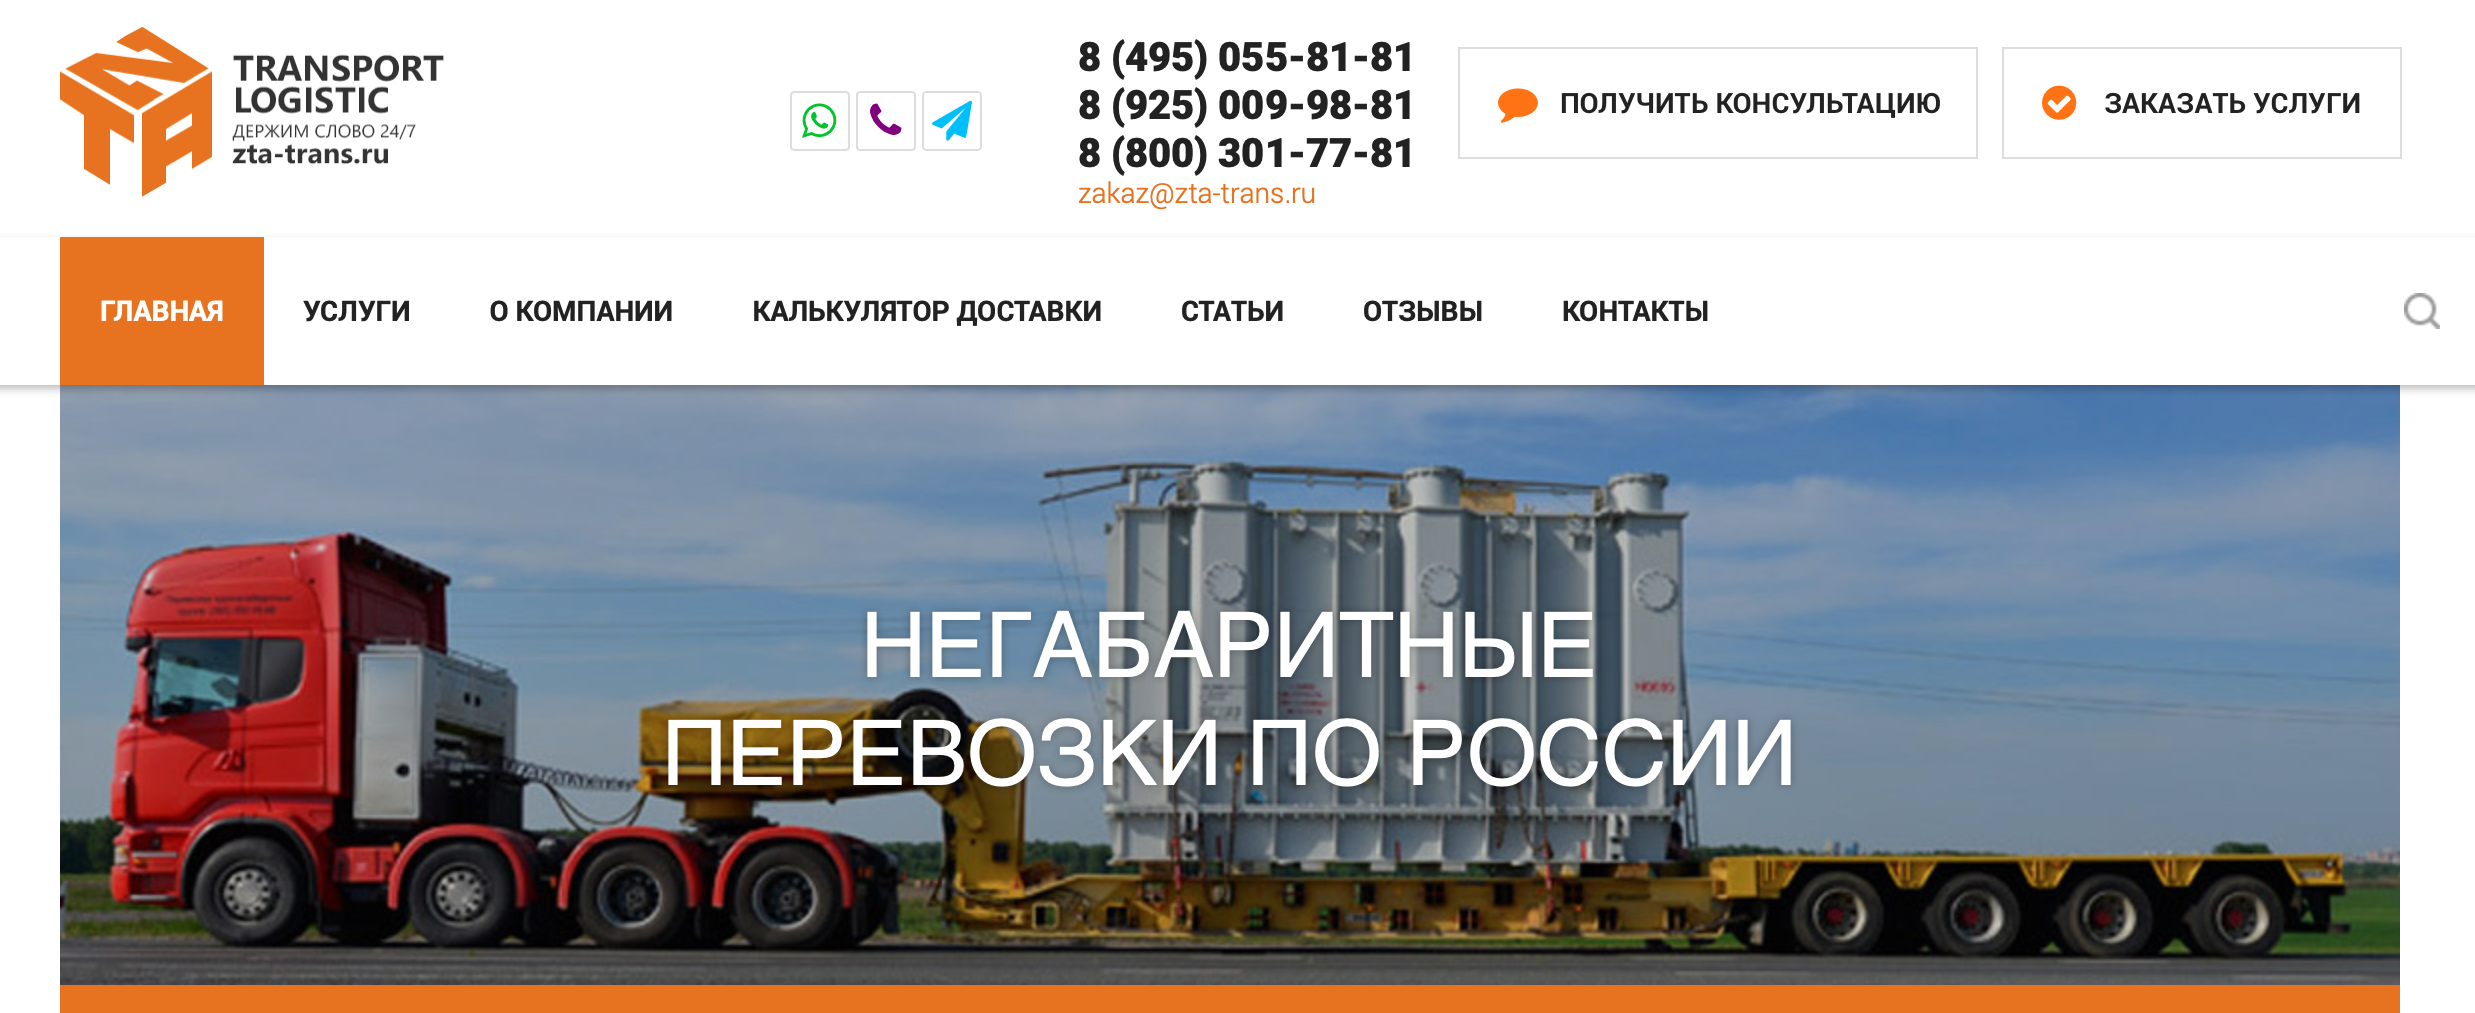 Особенности доставки грузов по России